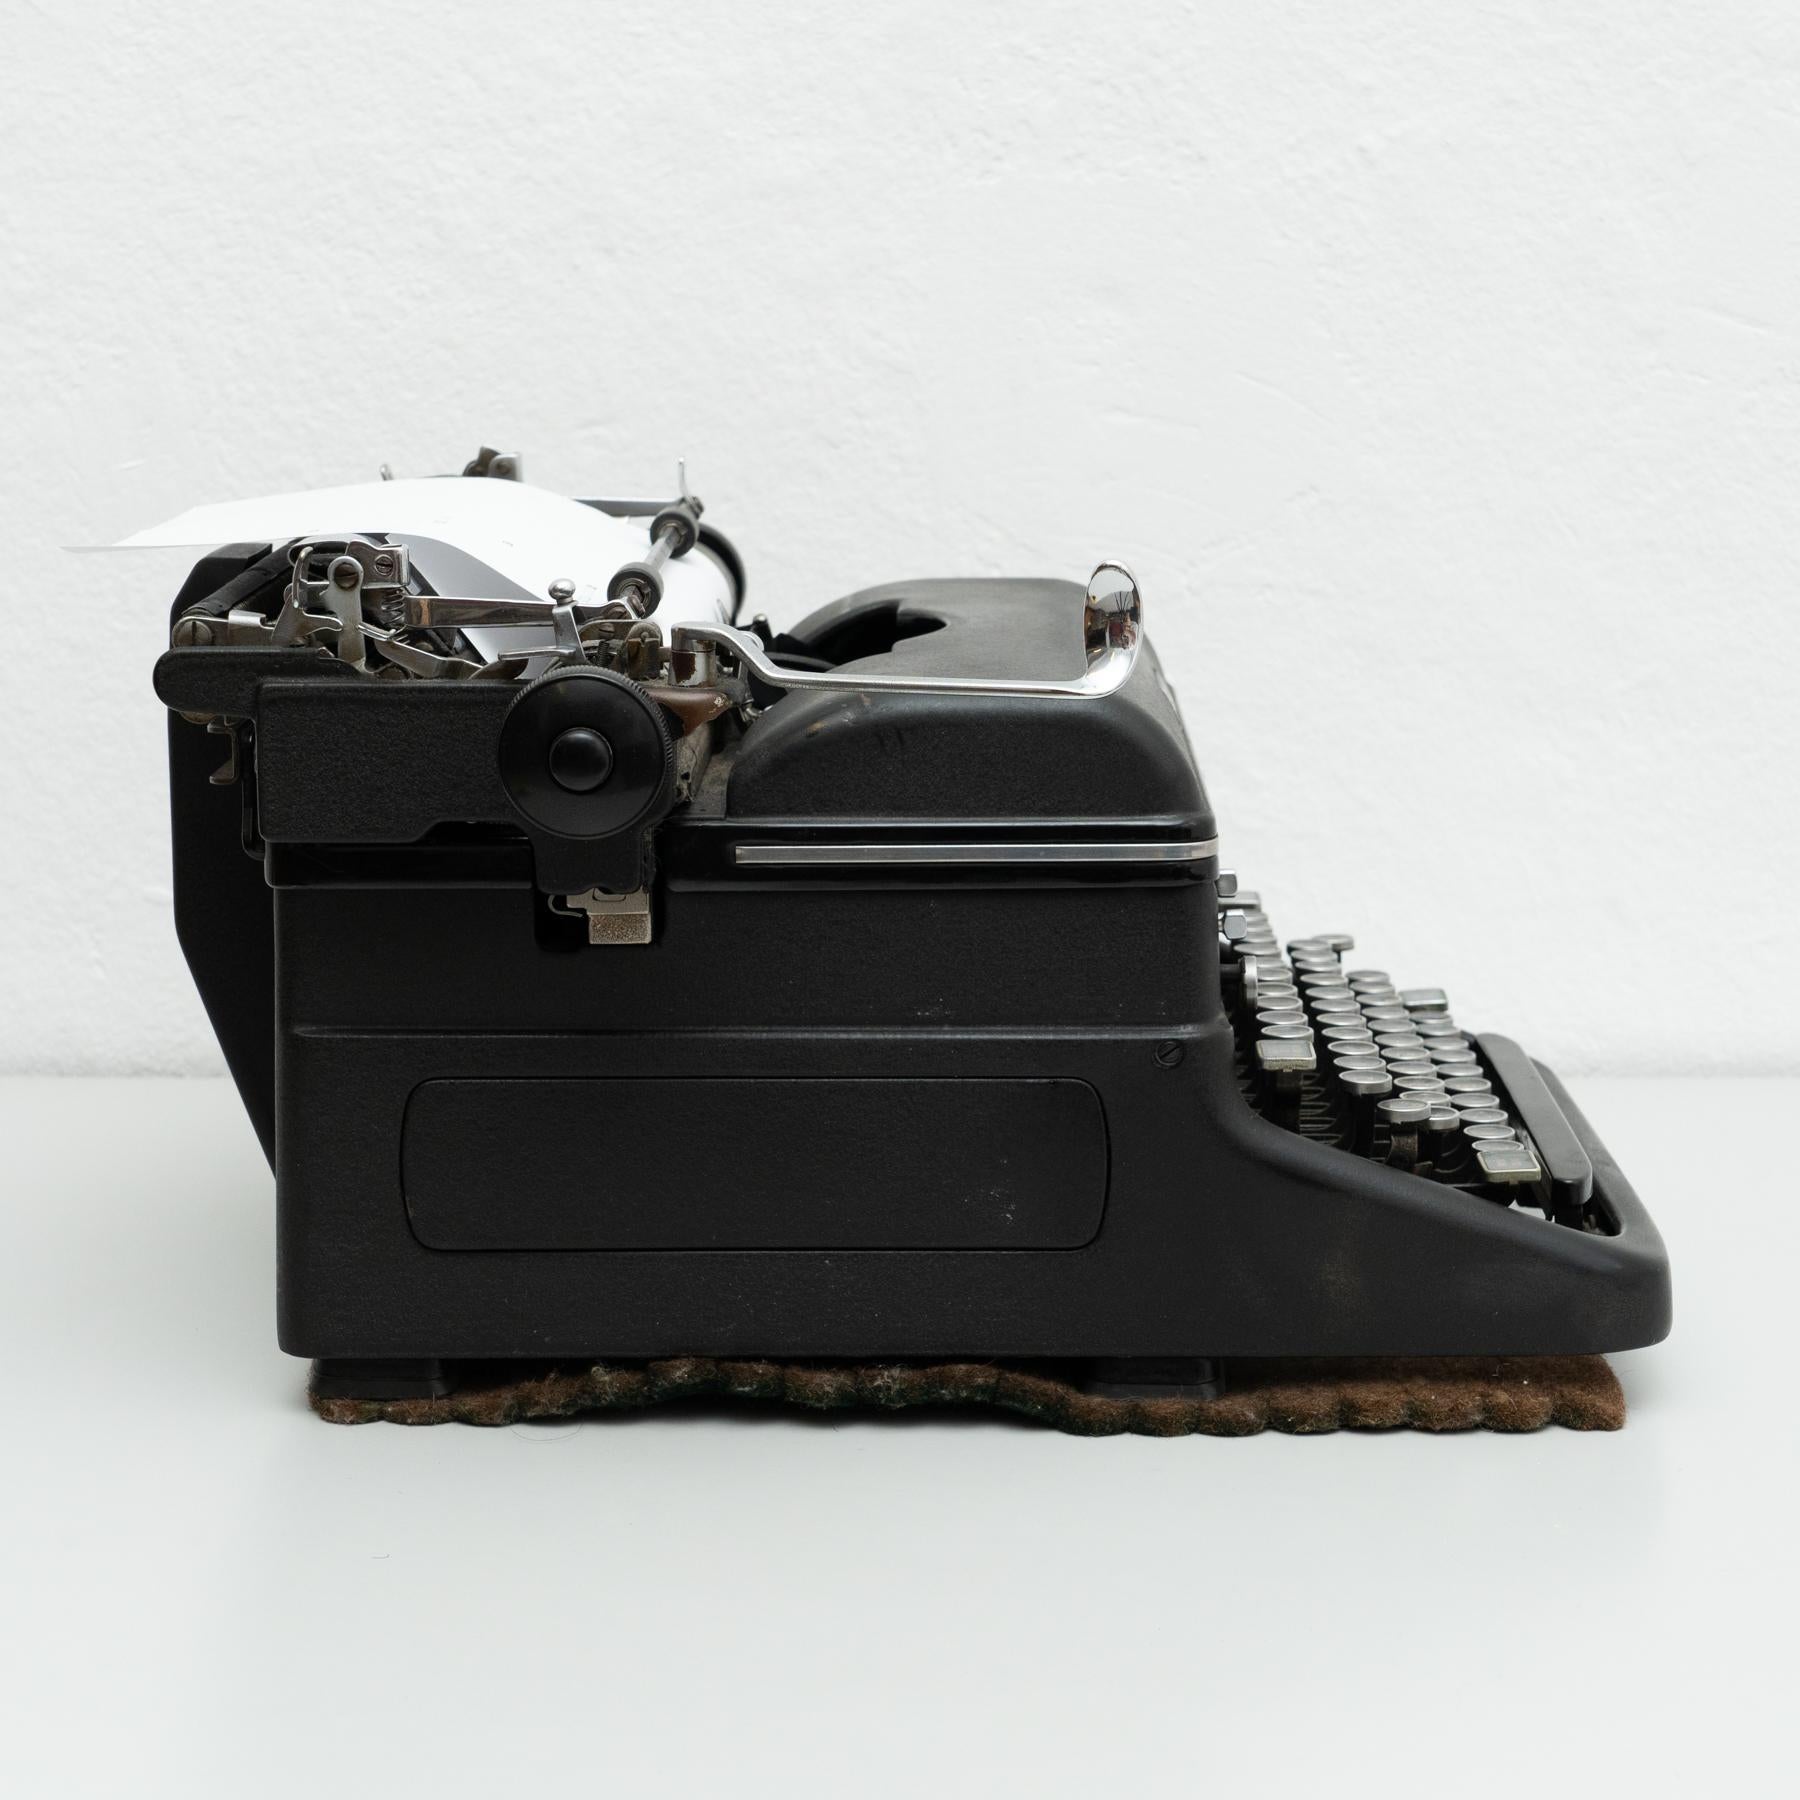 1920s typewriter